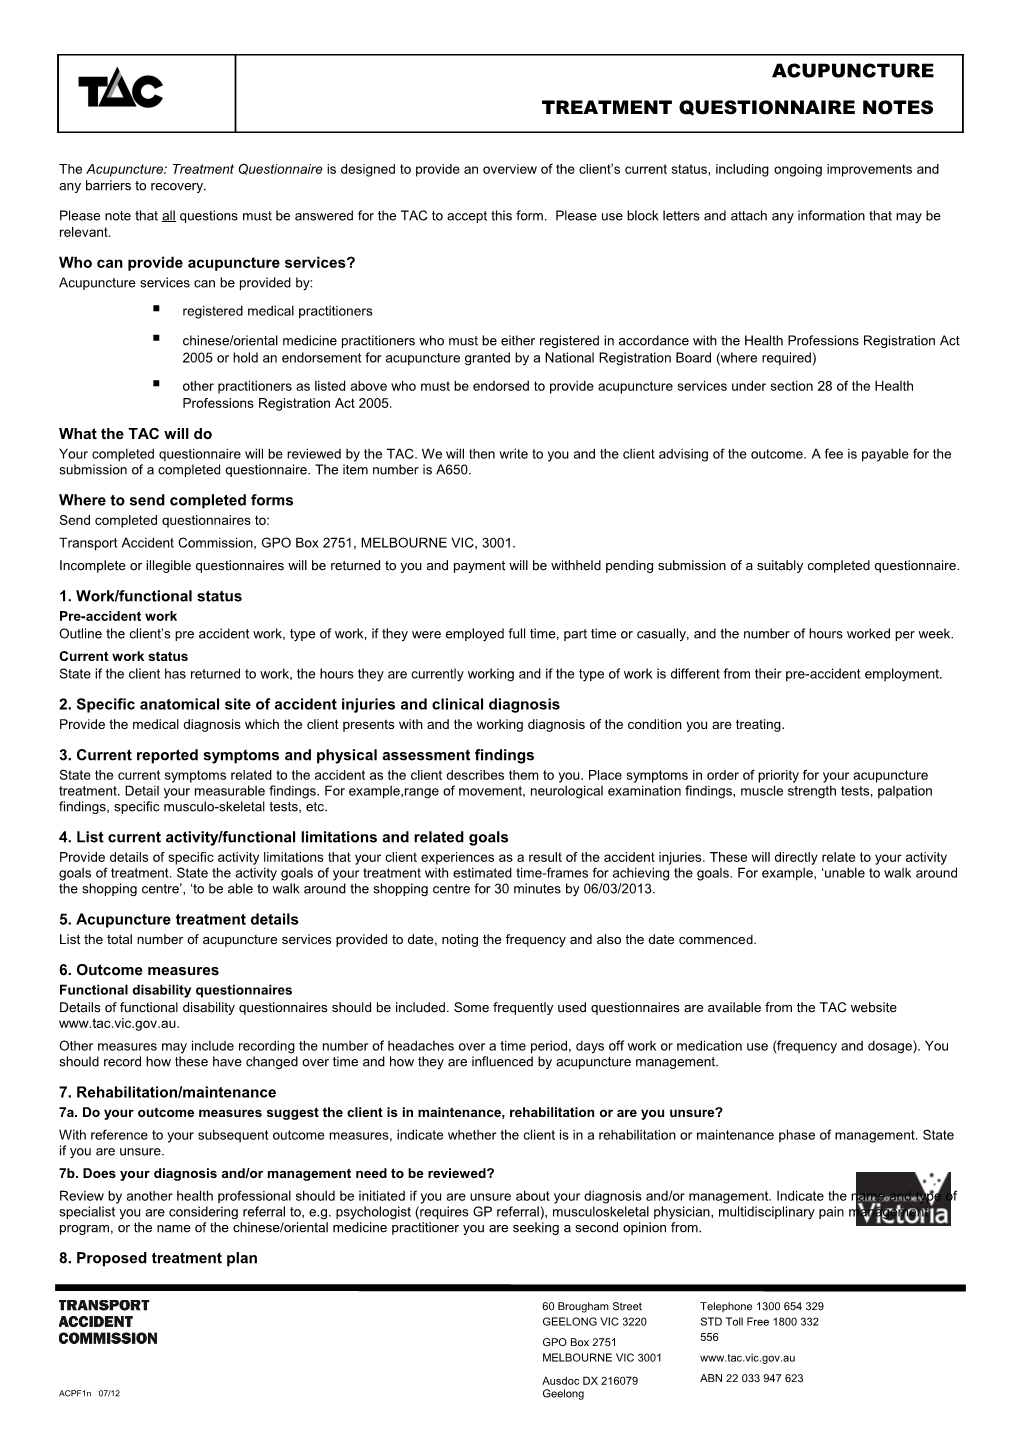 Treatment Questionnaire Notes